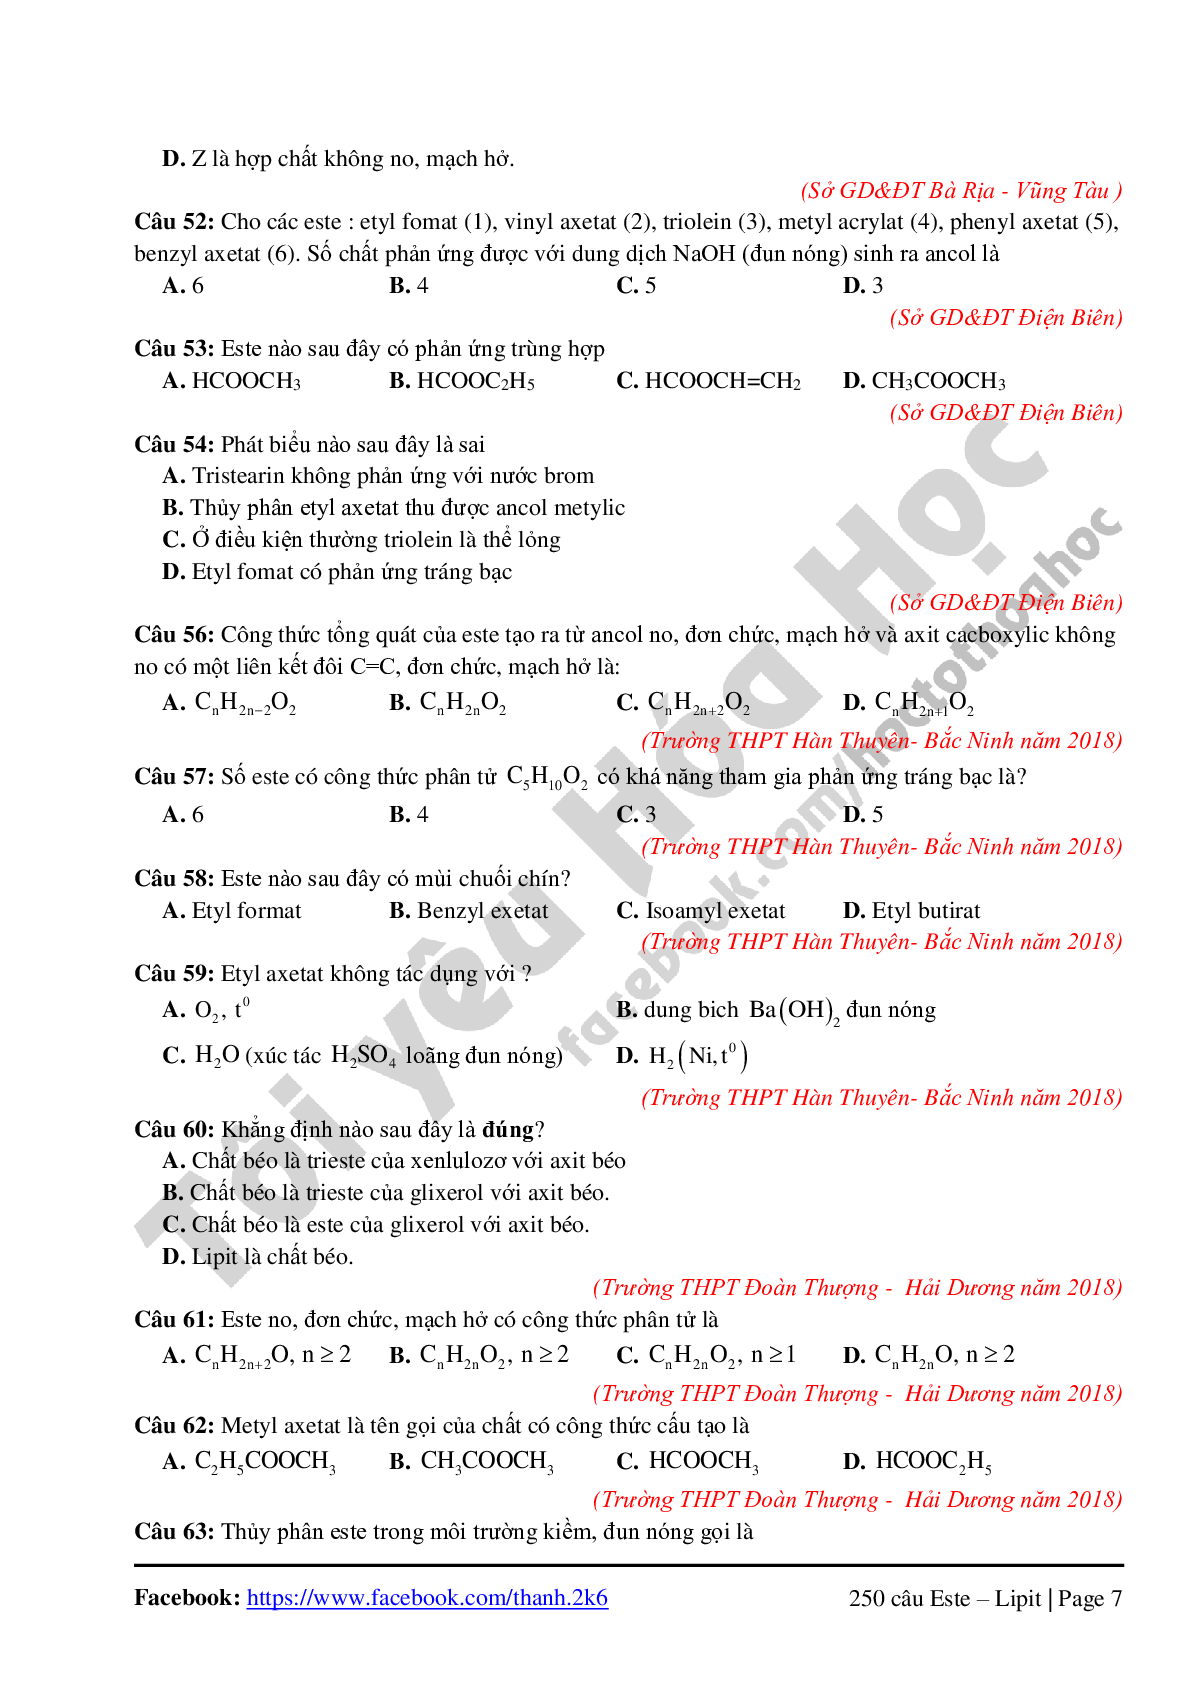 260 câu lý thuyết chuyên đề Este-Lipit môn Hóa học lớp 12 (trang 7)